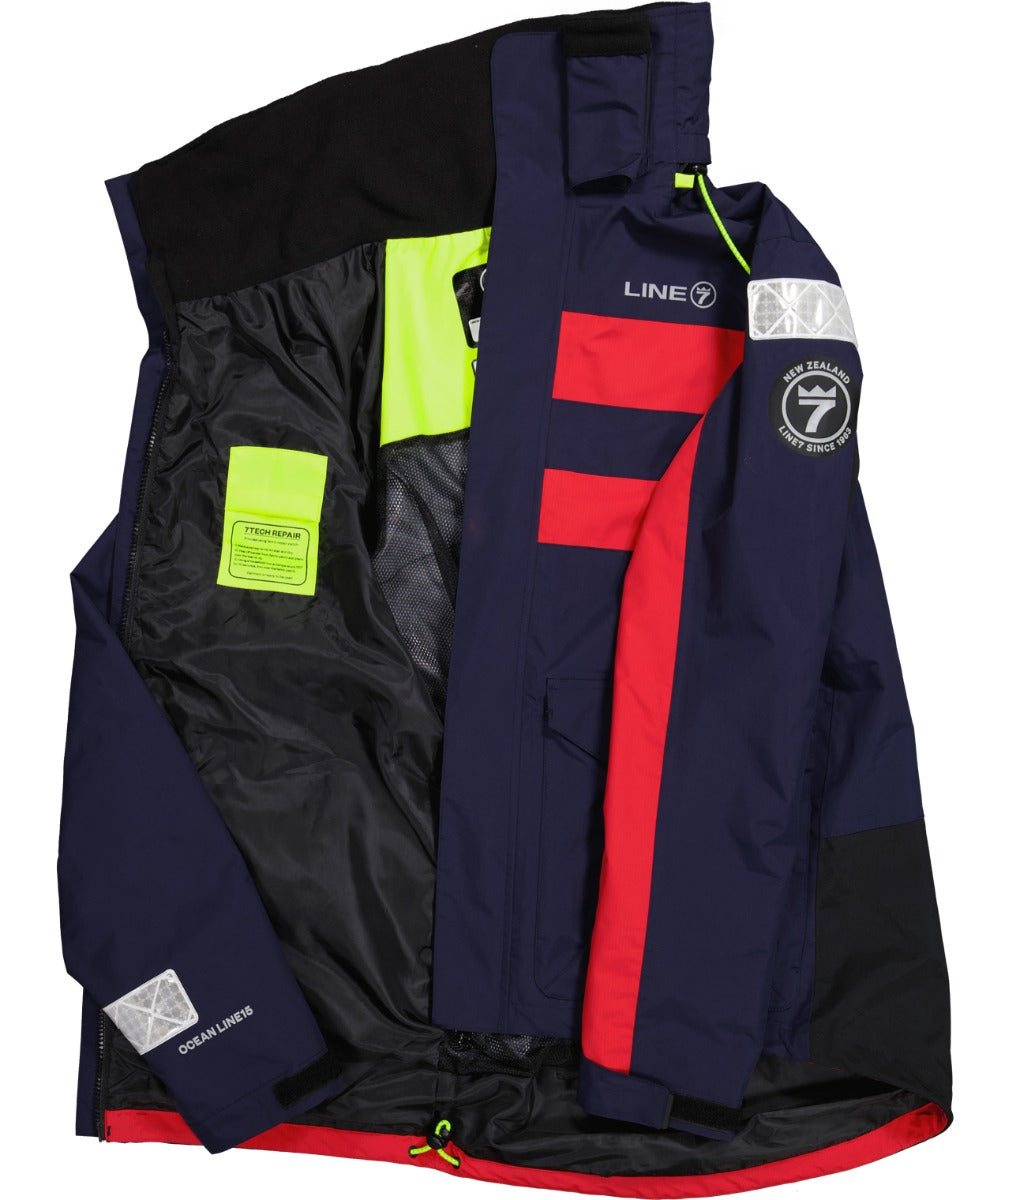 Line 7 Men's Ocean Wave15 Waterproof Jacket Navy/Red